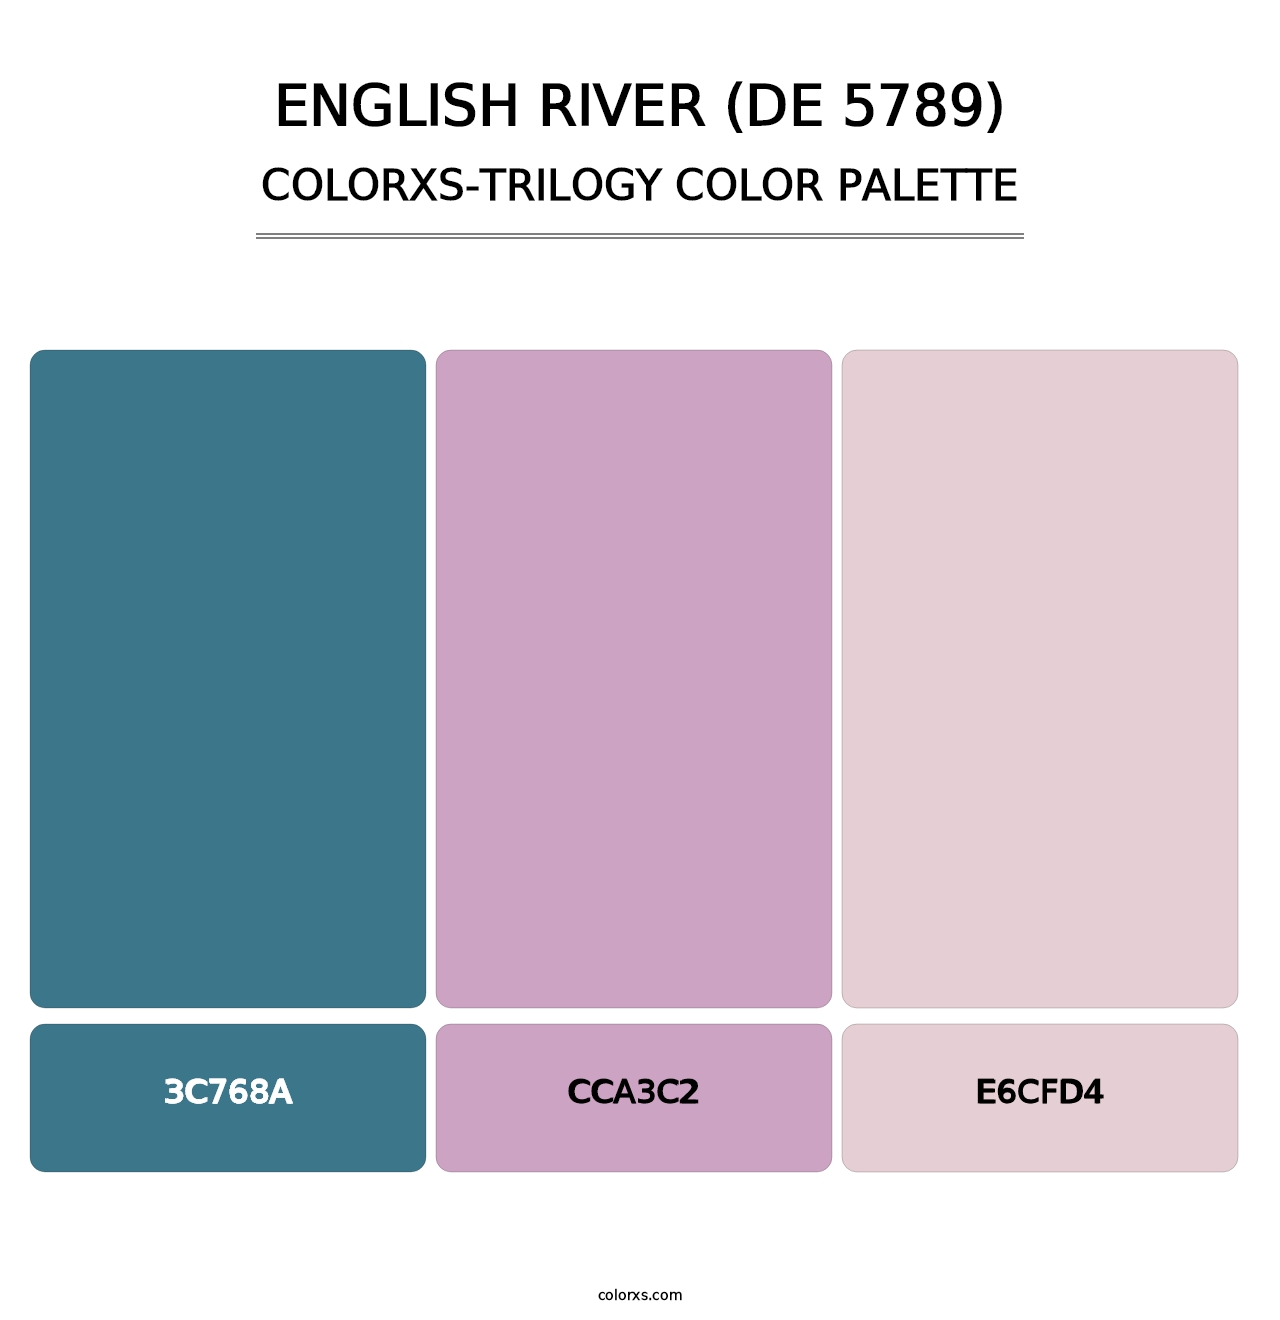 English River (DE 5789) - Colorxs Trilogy Palette